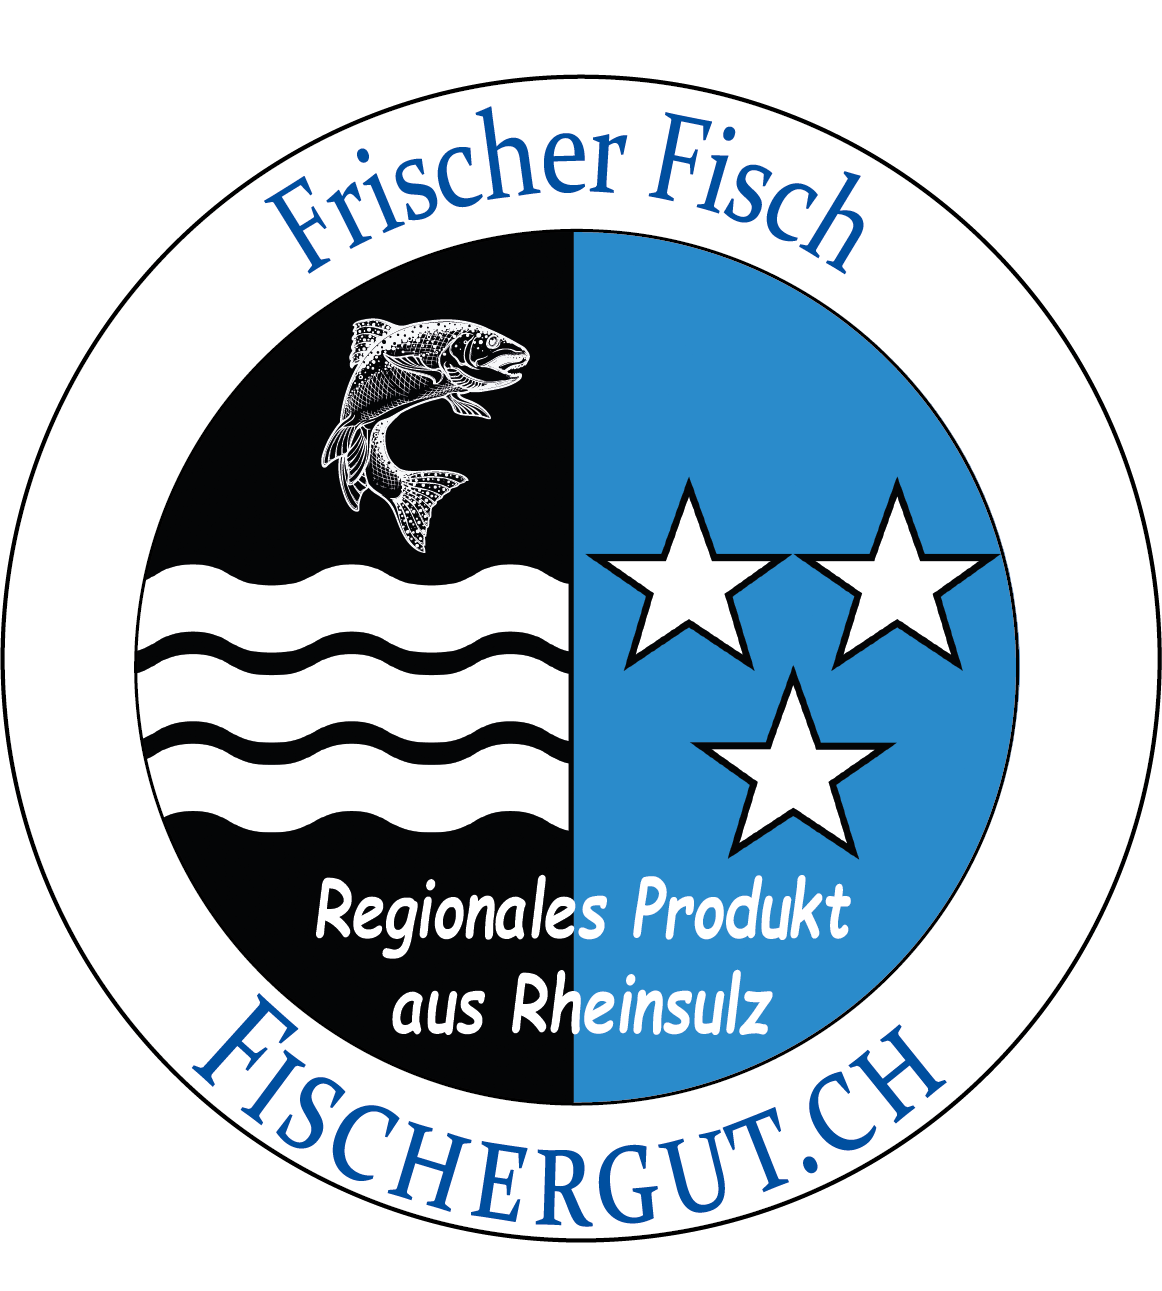 Label Regionales Produkt aus Rheinsulz